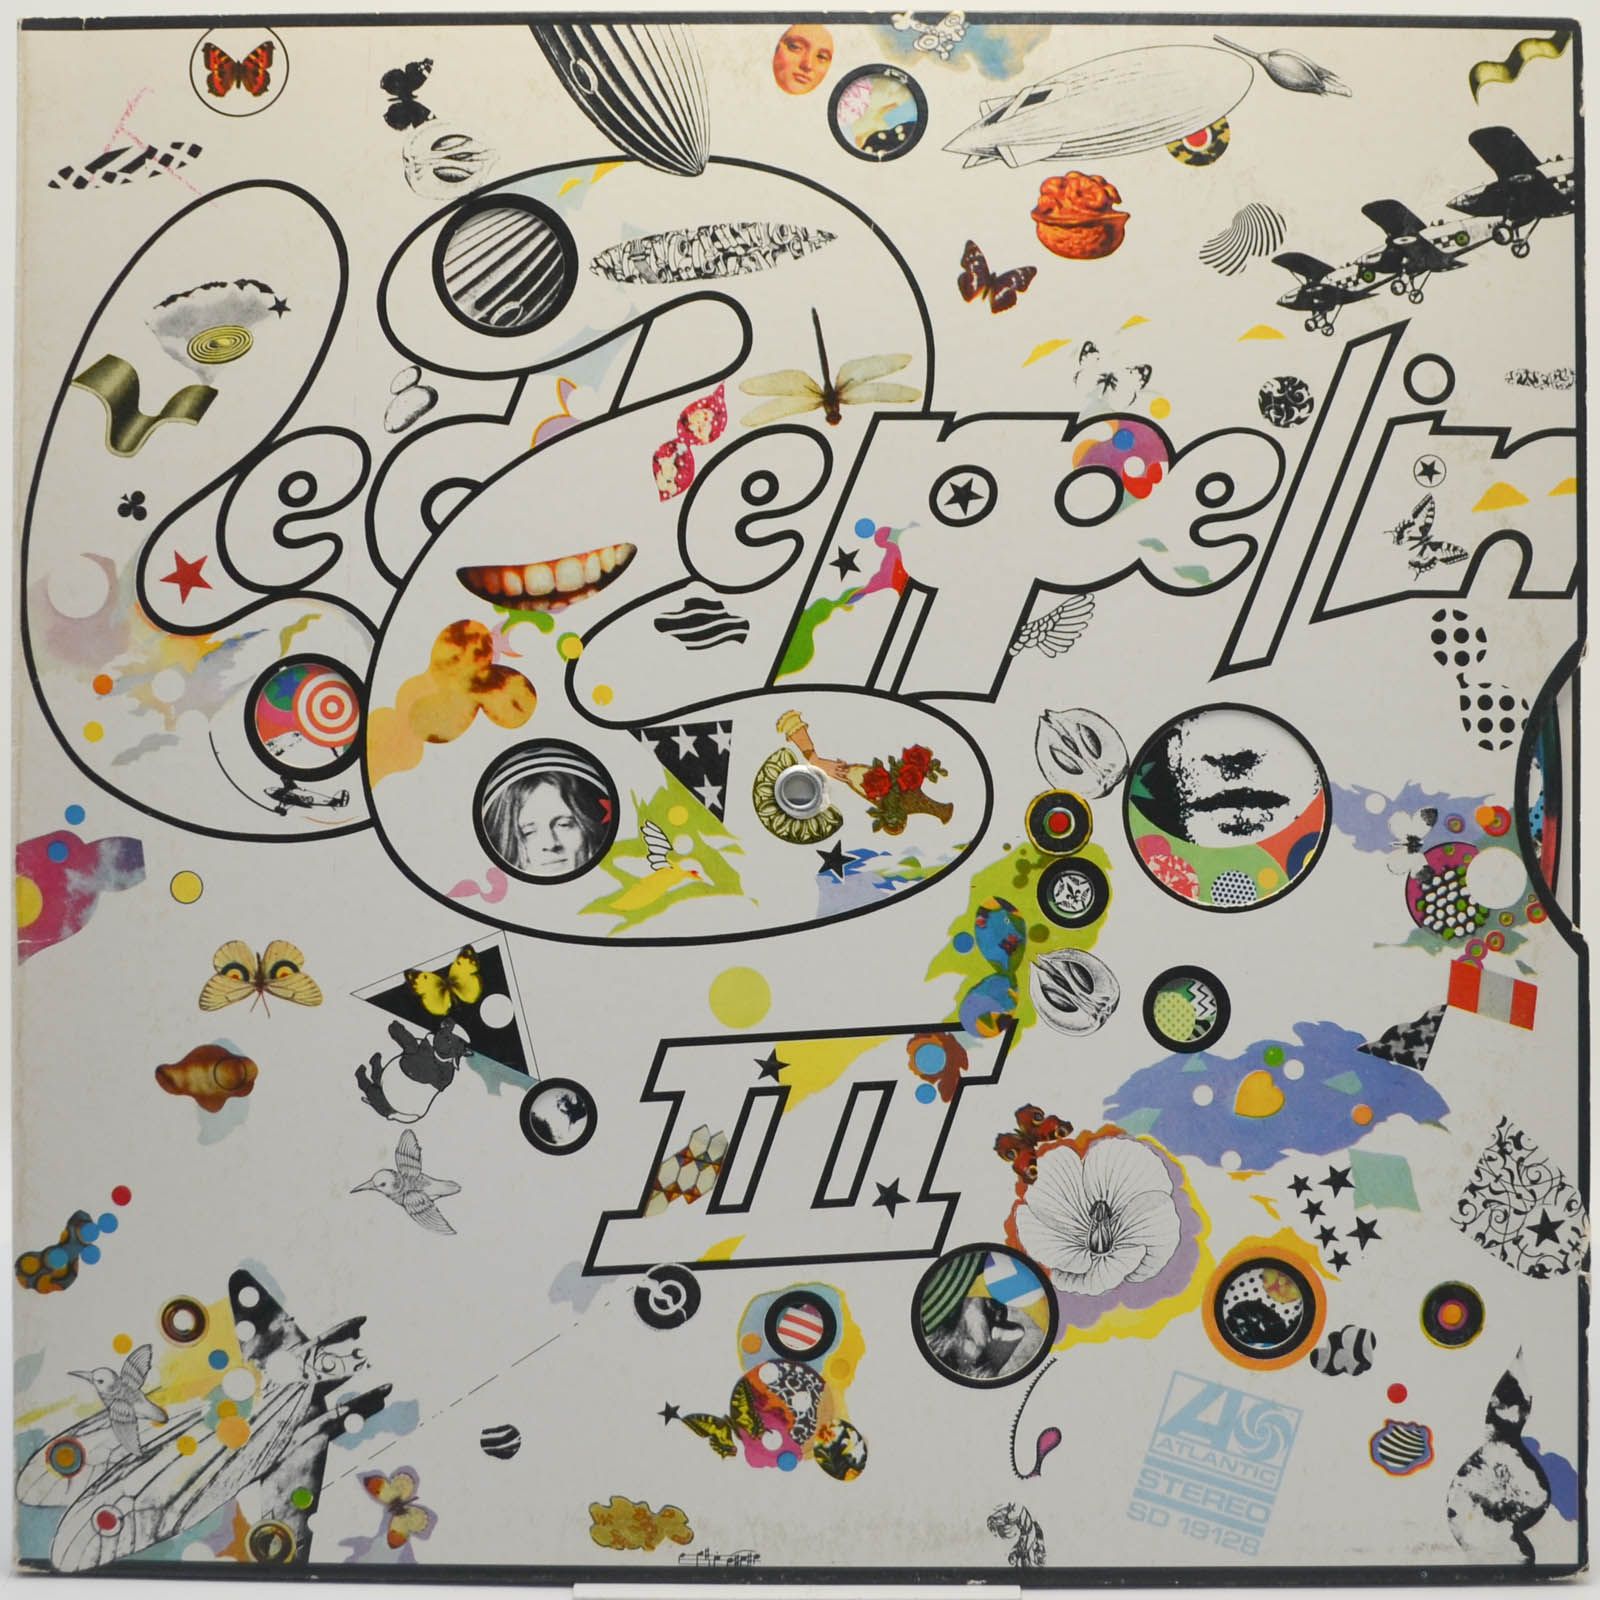 Led Zeppelin — Led Zeppelin III (USA), 1970